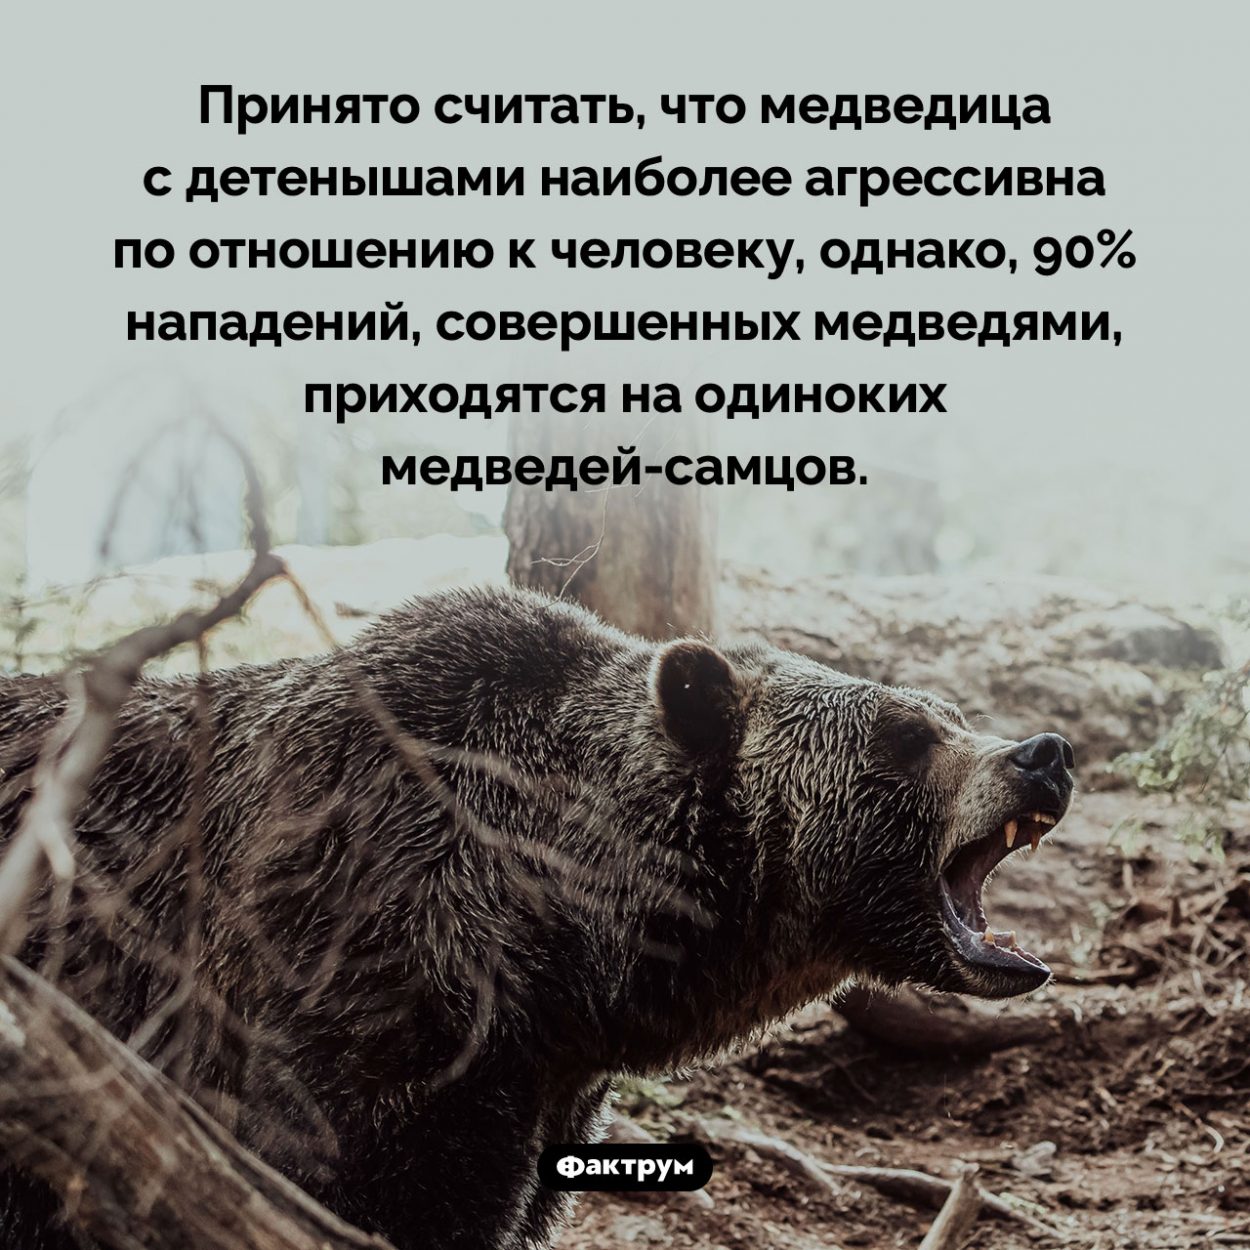 Какие медведи чаще всего нападают на людей. Принято считать, что медведица с детенышами наиболее агрессивна по отношению к человеку, однако, 90% нападений, совершенных медведями, приходятся на одиноких <nobr>медведей-самцов</nobr>.